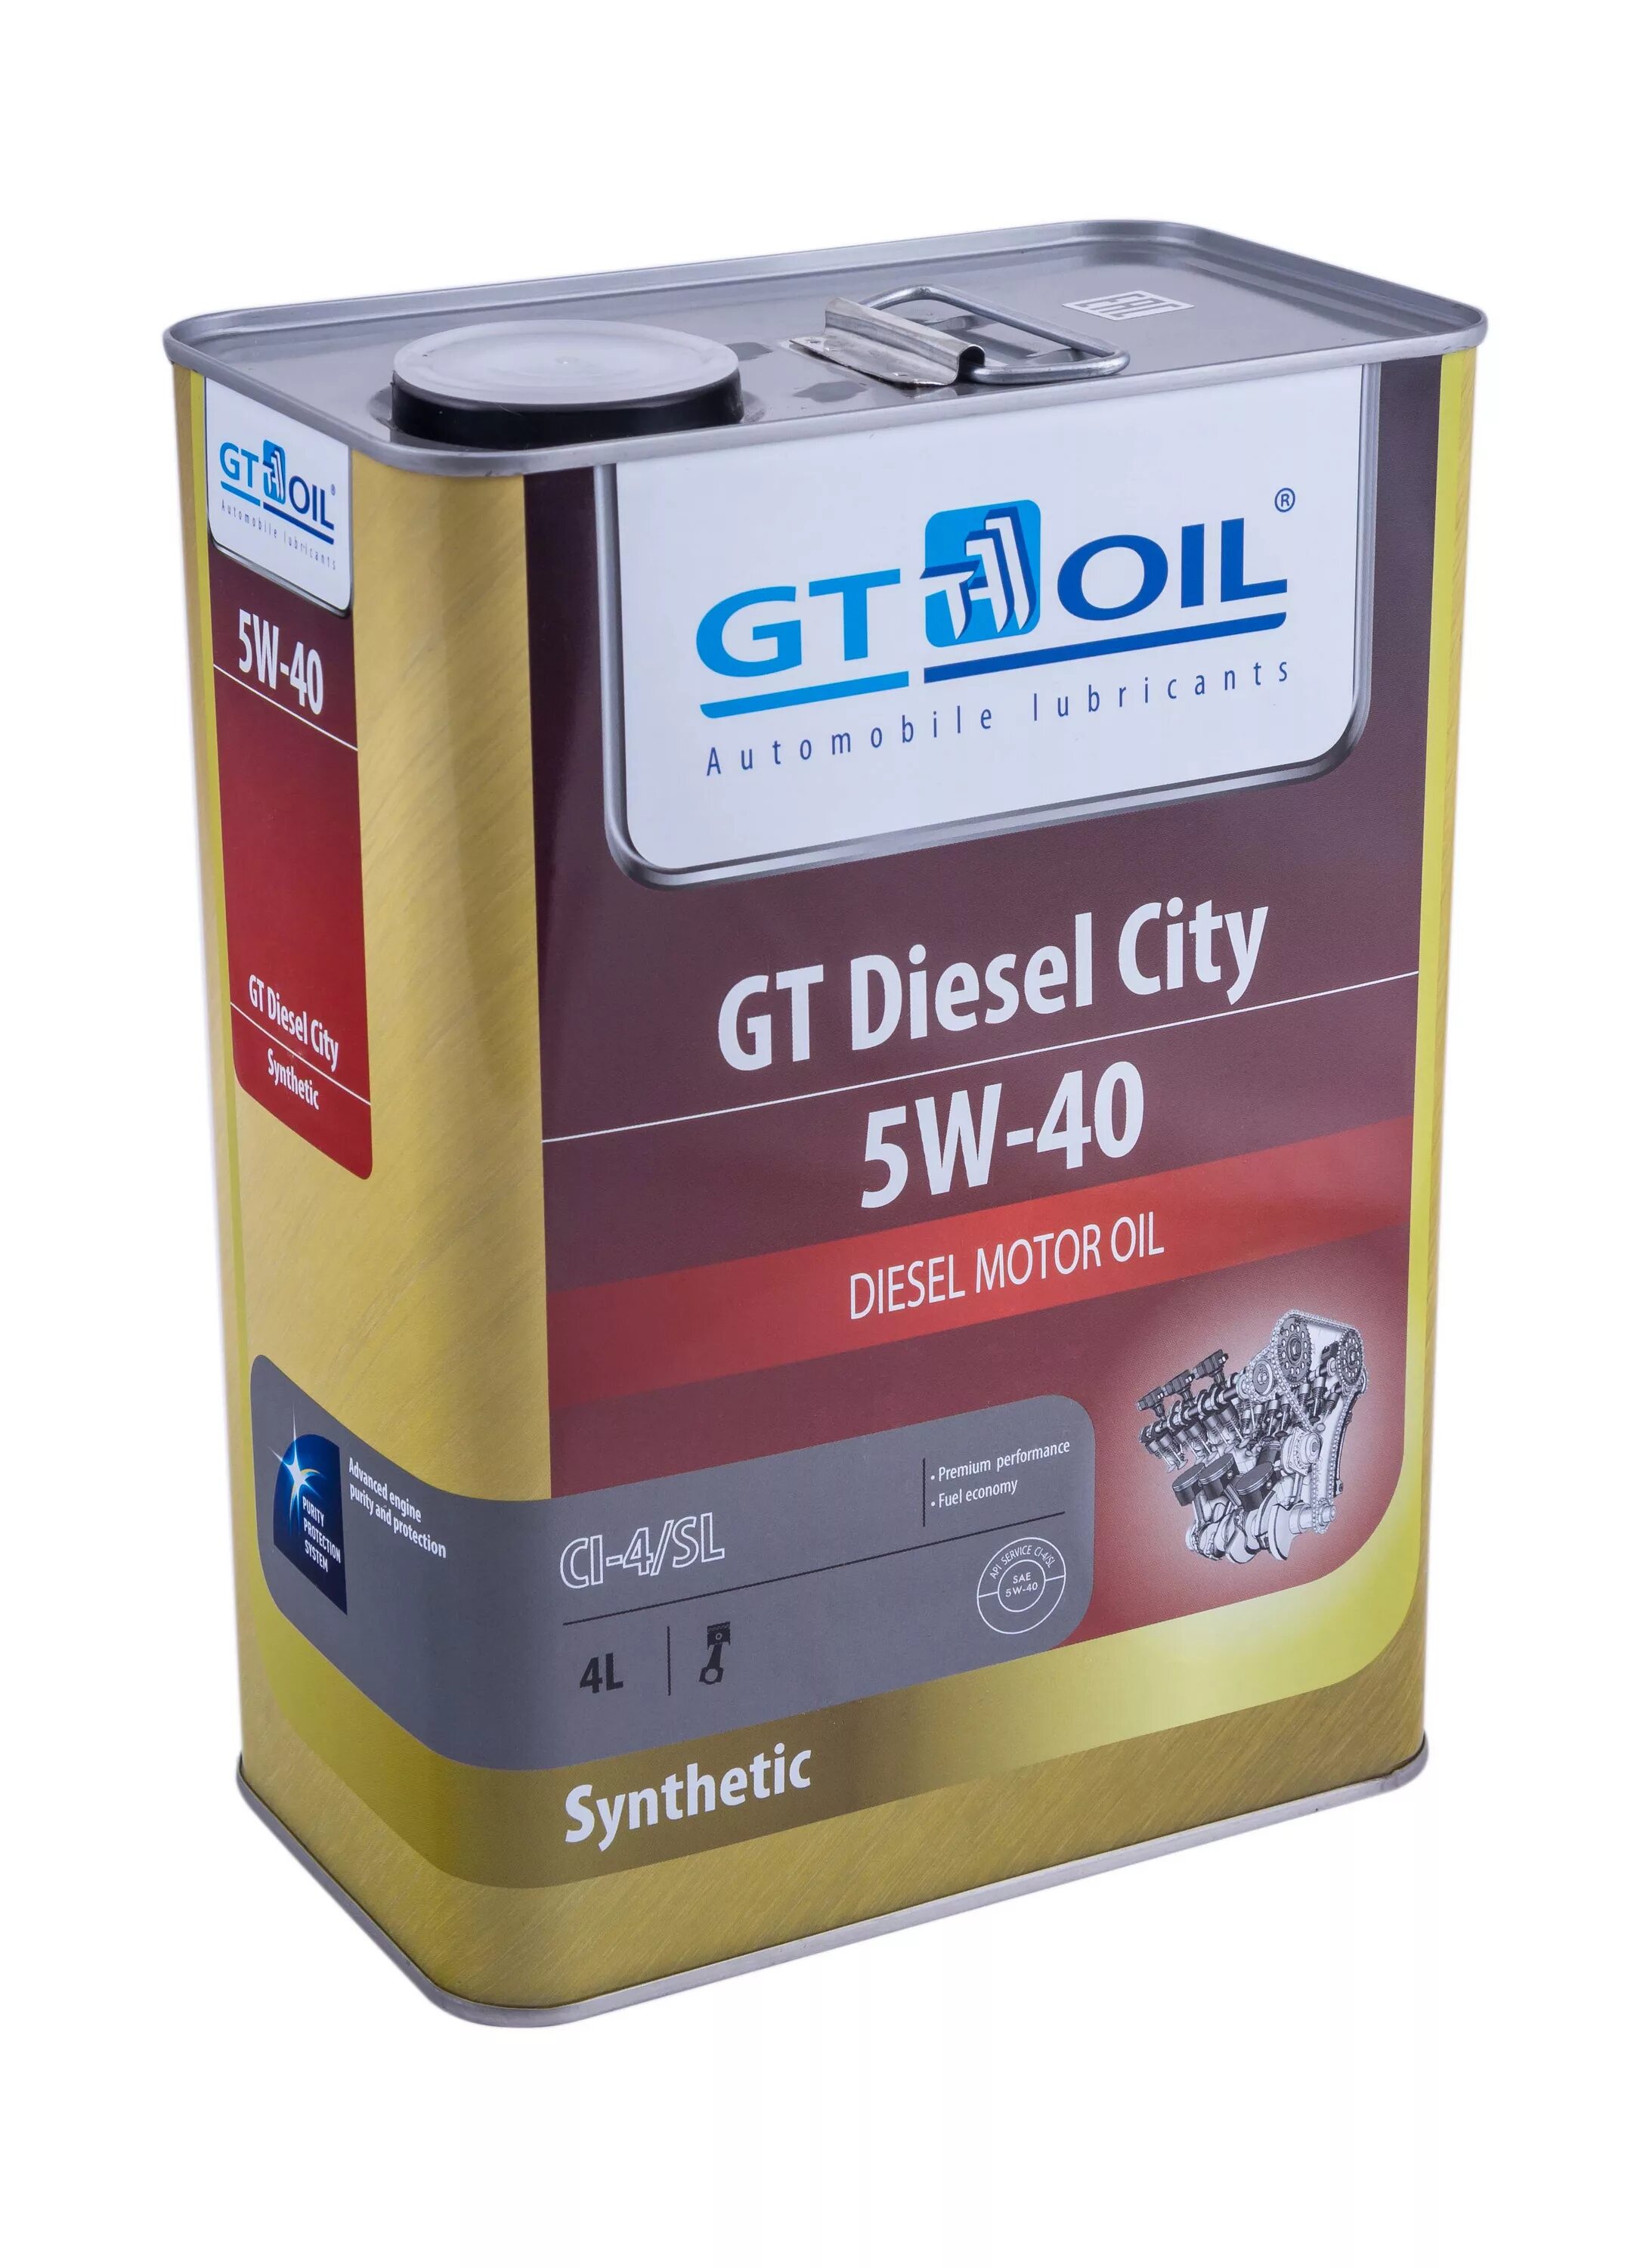 8809059408001 Gt Oil. Gt Oil 5w40. Gt Diesel City 5w-40 4л. Масло gt Diesel City, SAE 5w-40, API ci-4/SL, 4 Л, шт.